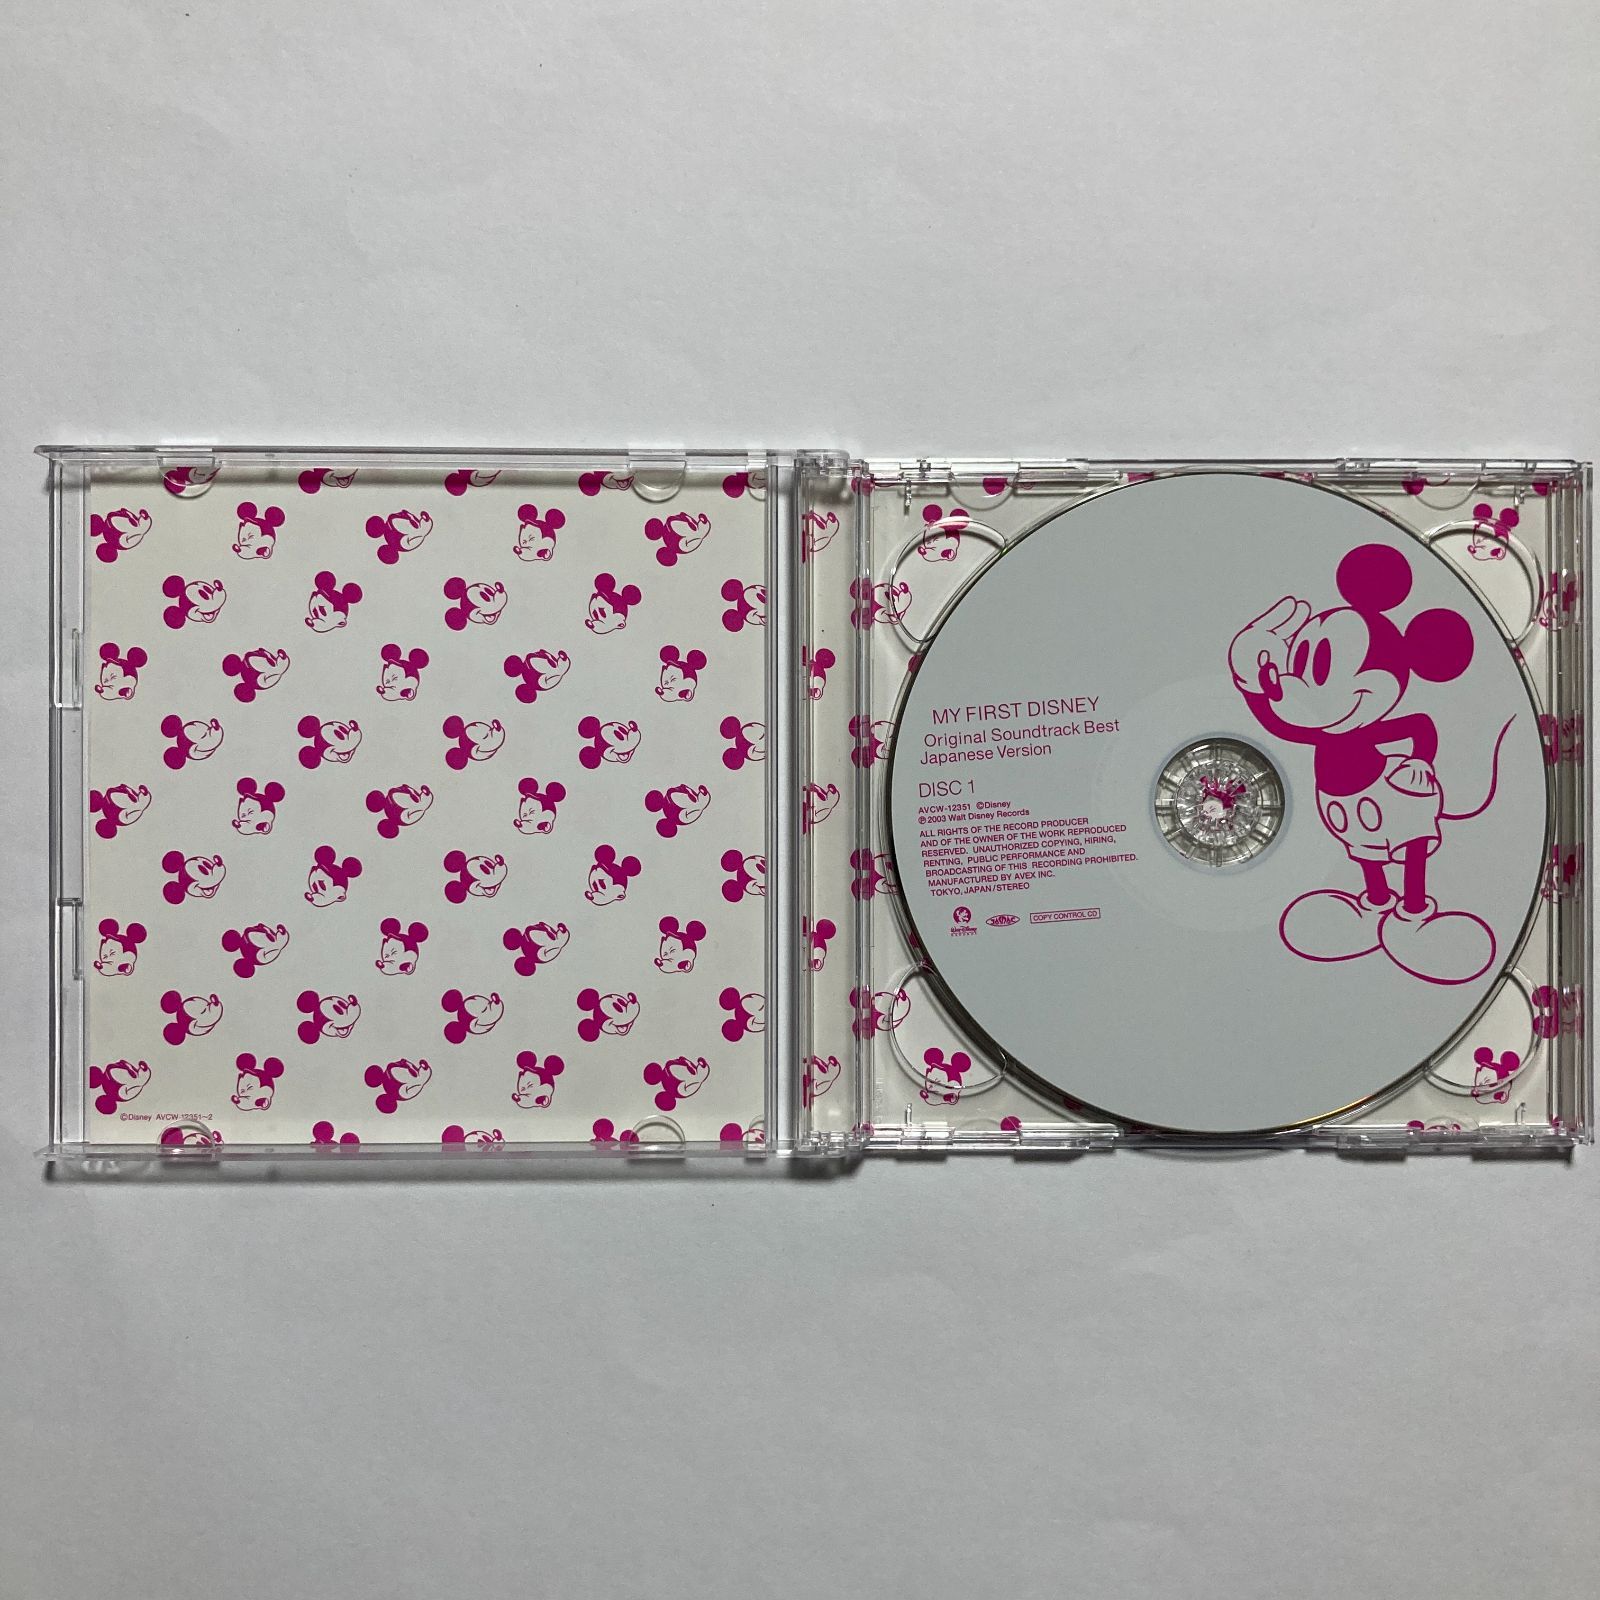 Pluster World Original Soundtrack Japan Music CD 4988013568303